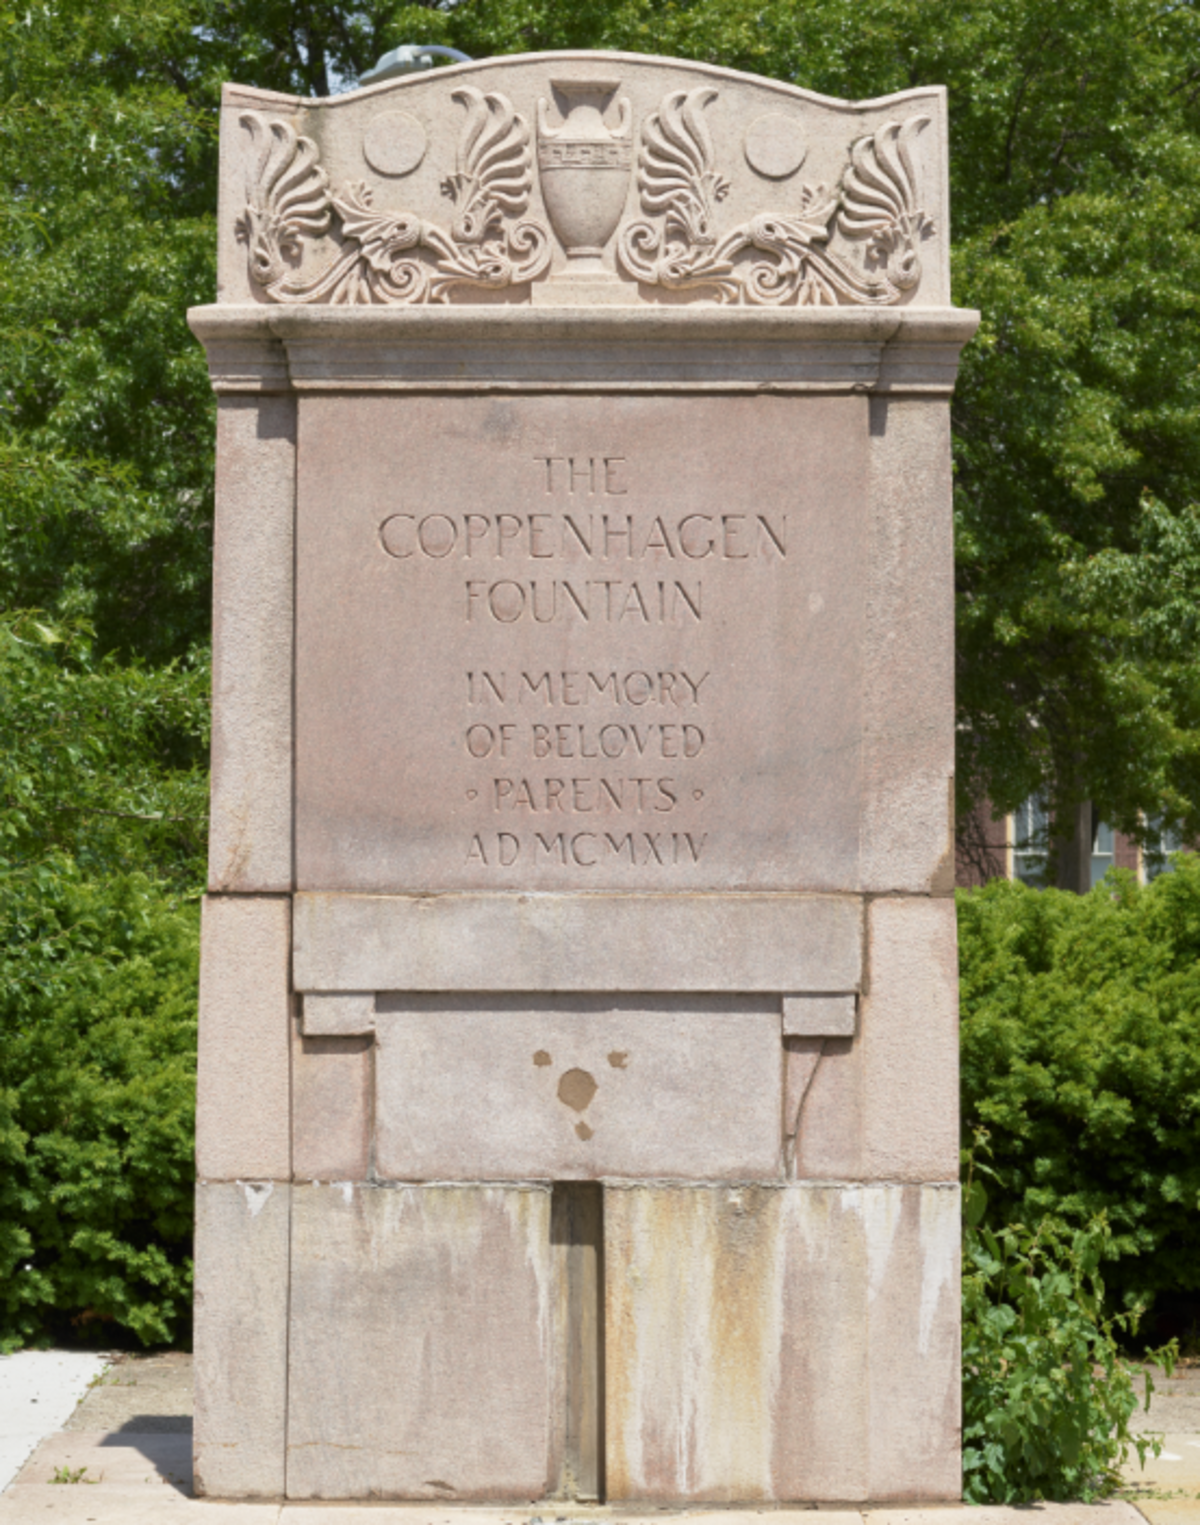 The Coppenhagen Fountain